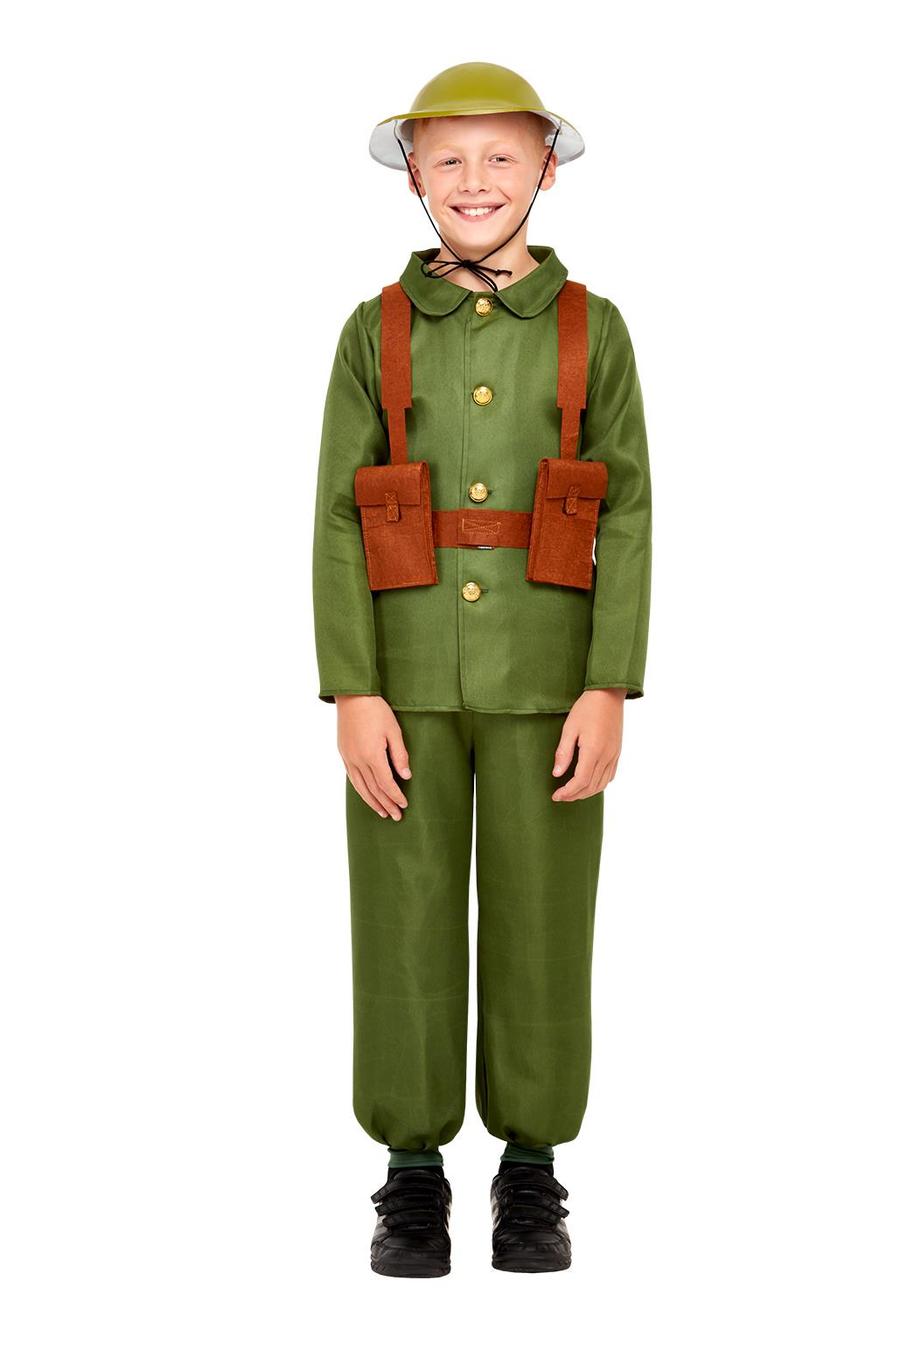 WW1 Soldier Costume Alt1